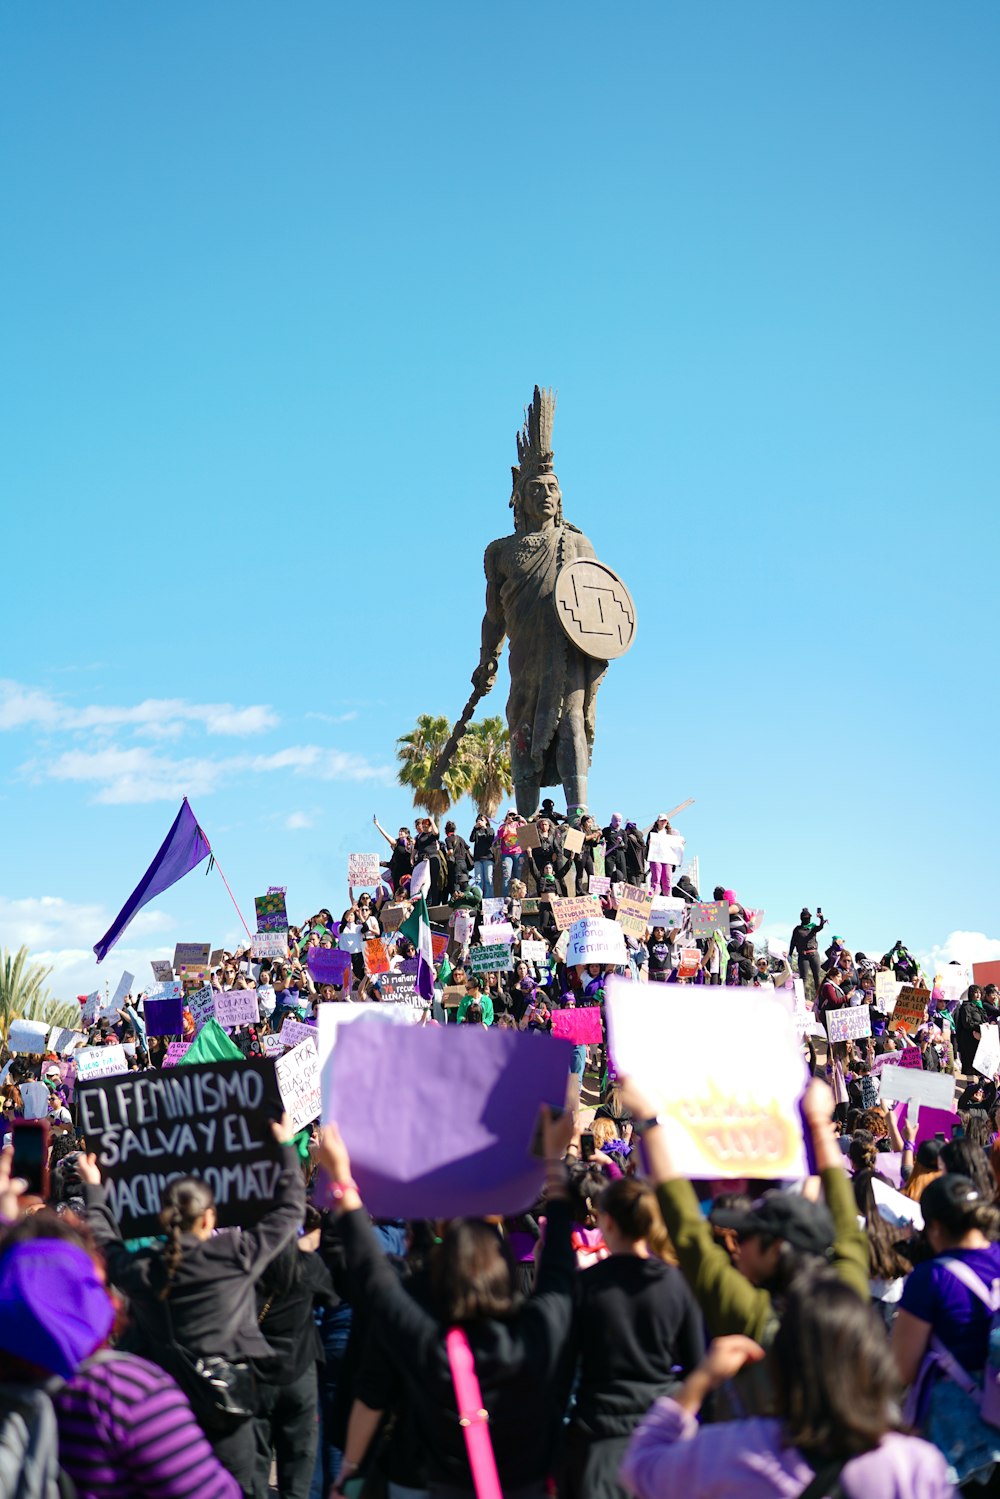 銅像の前で看板を掲げる人々の群れ